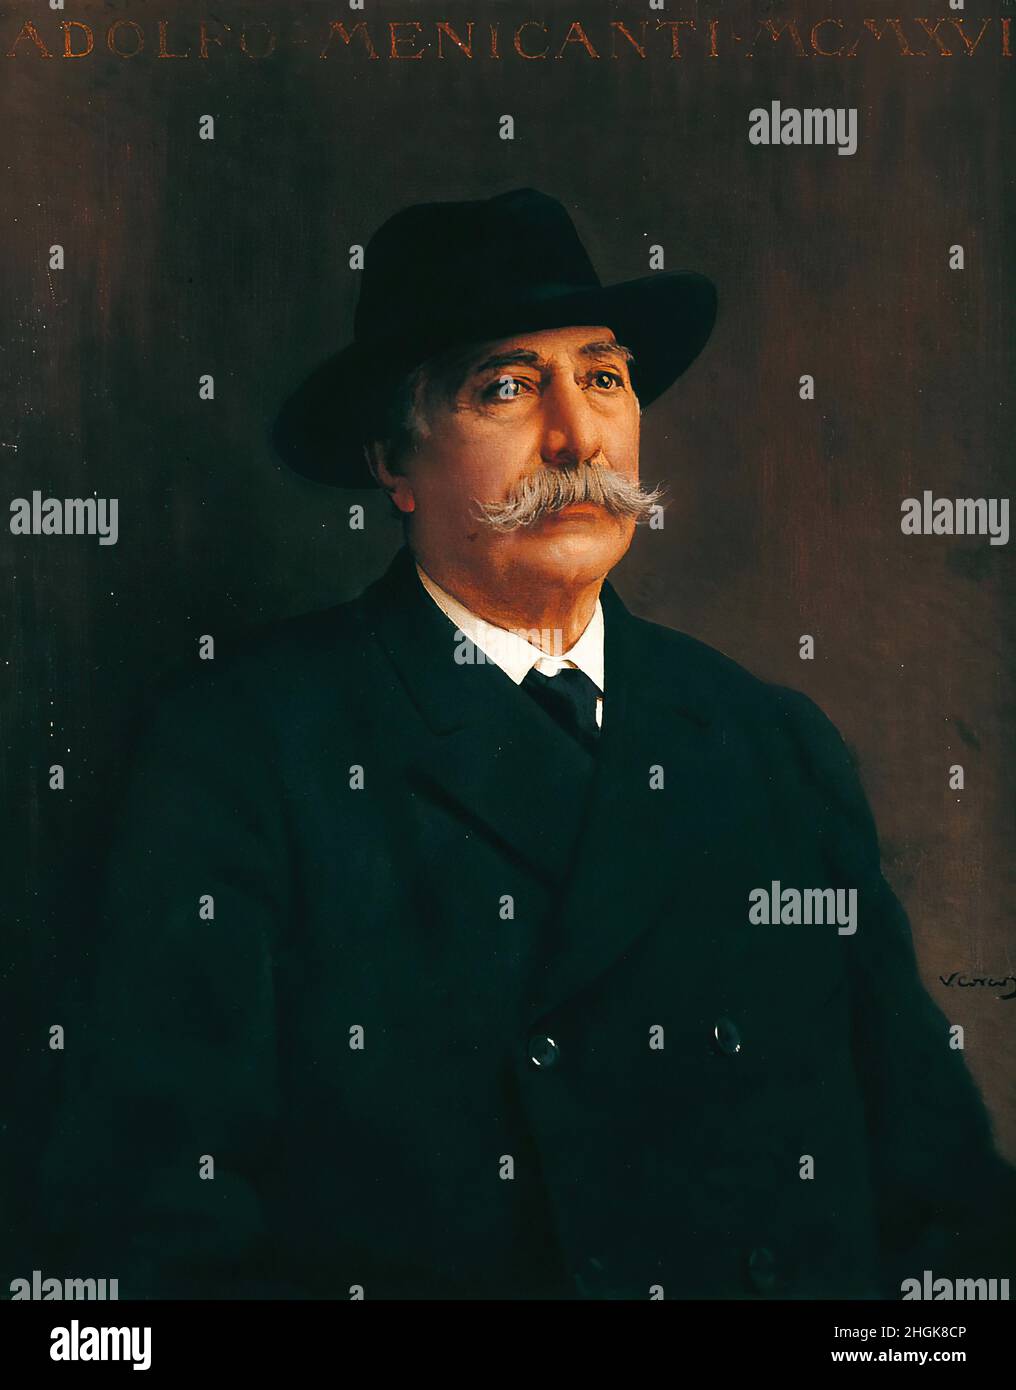 Ritratto a mezzo busto di Adolfo Menicanti - 1916 - oil on canvas 90 x 74 cm - Corcos Vittorio Matteo Stock Photo